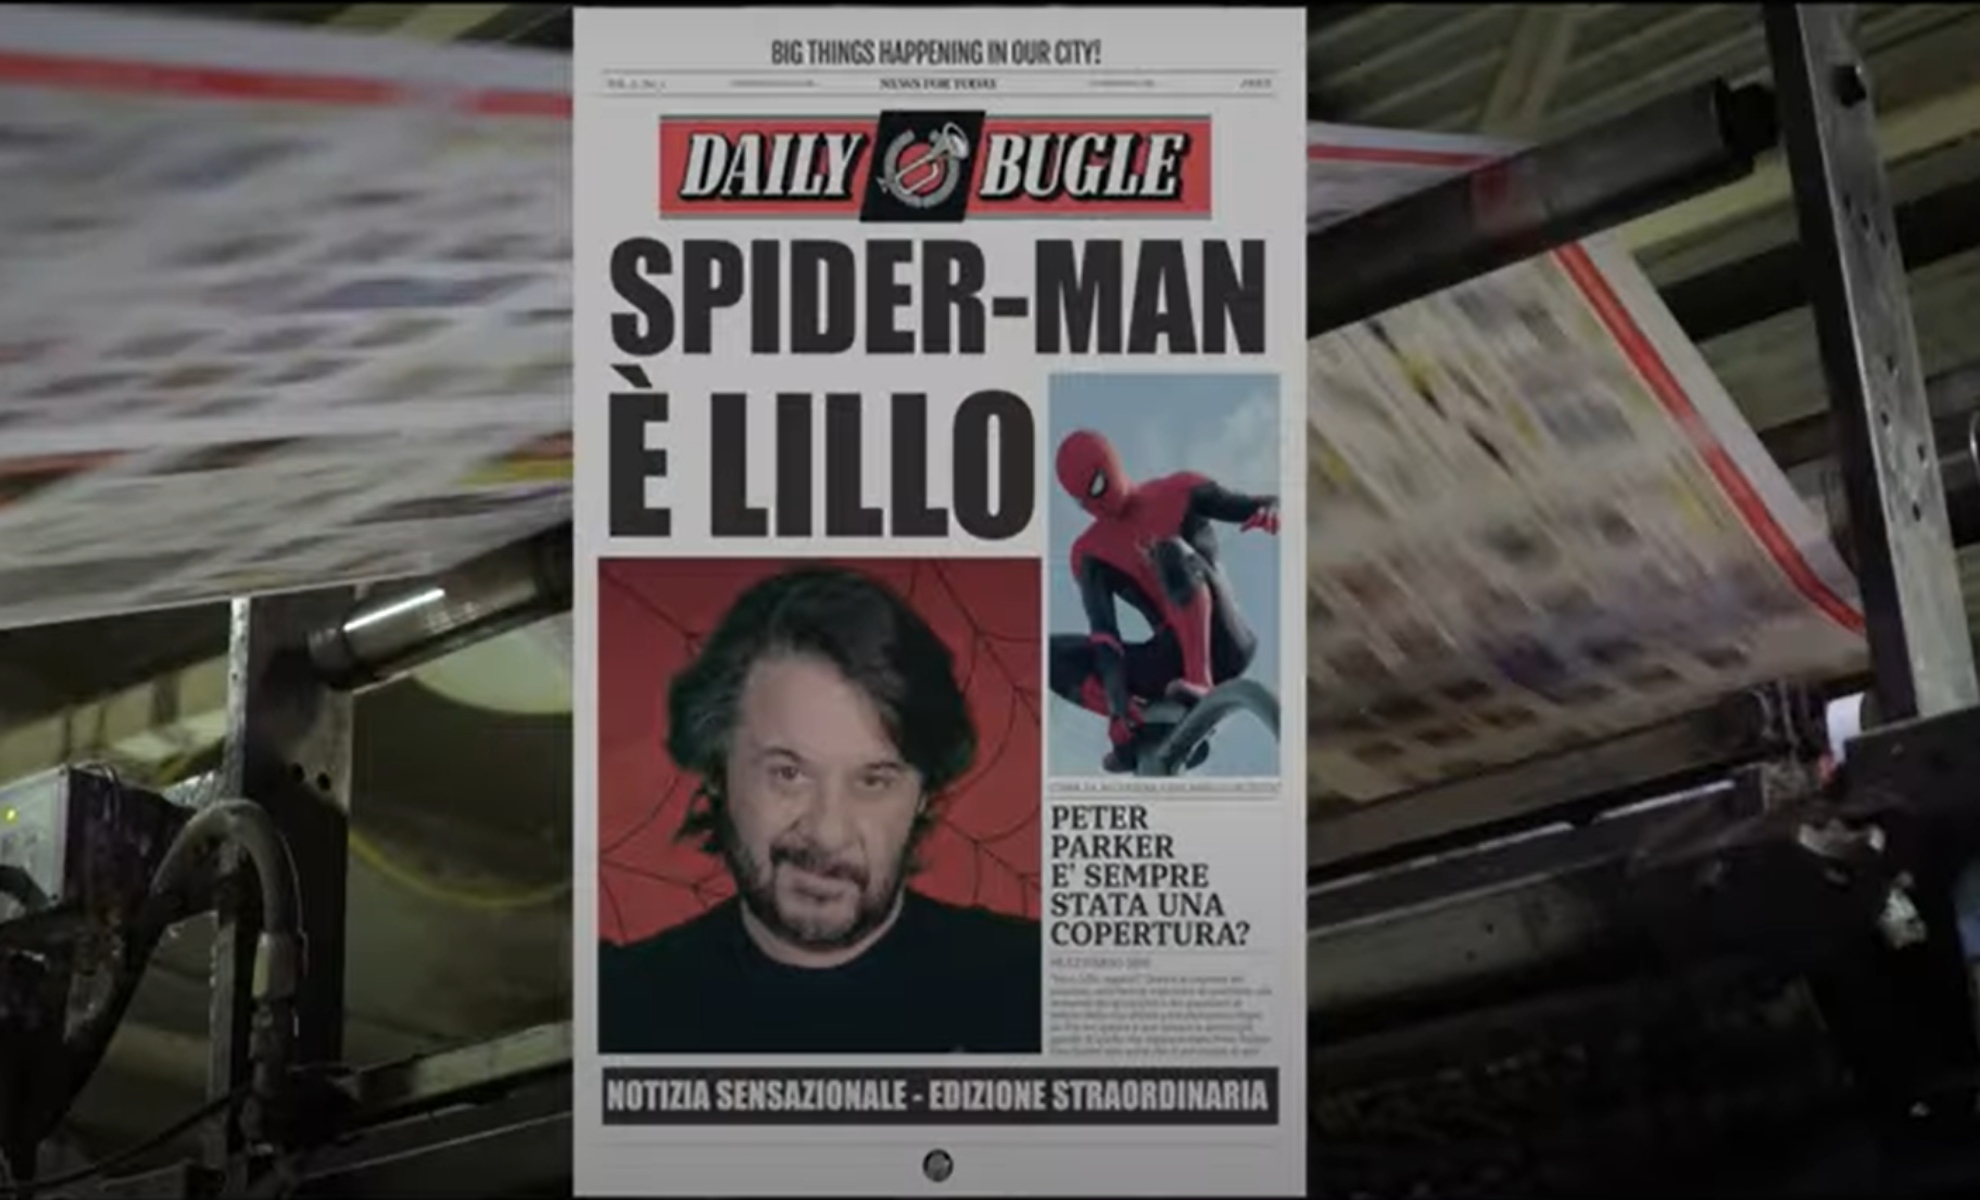 Lillo, Spider-Man